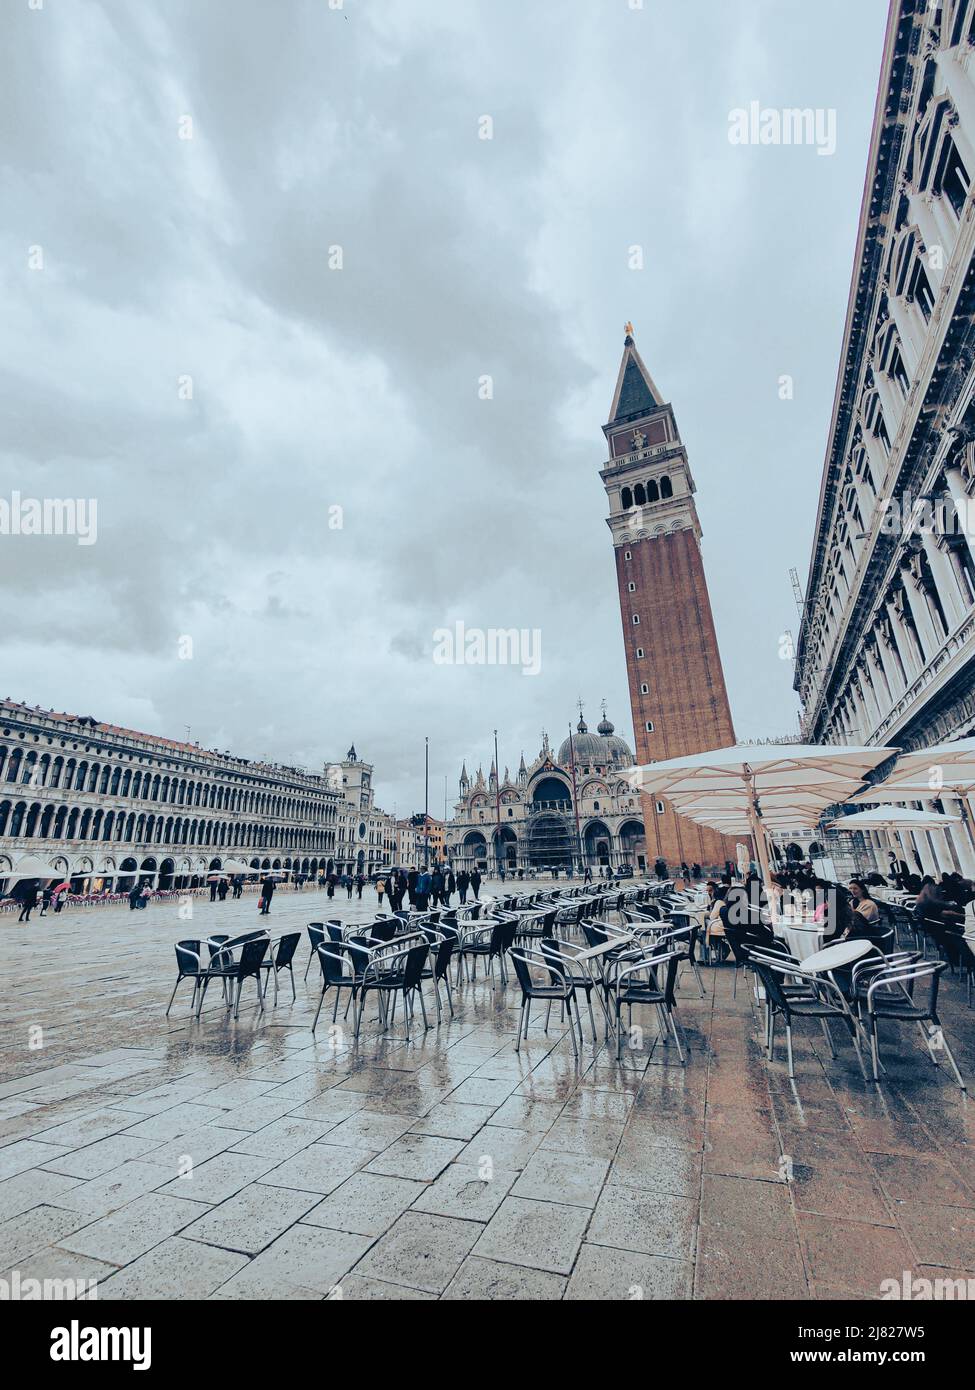 St Mark's Square in the rain, Venice Stock Photo